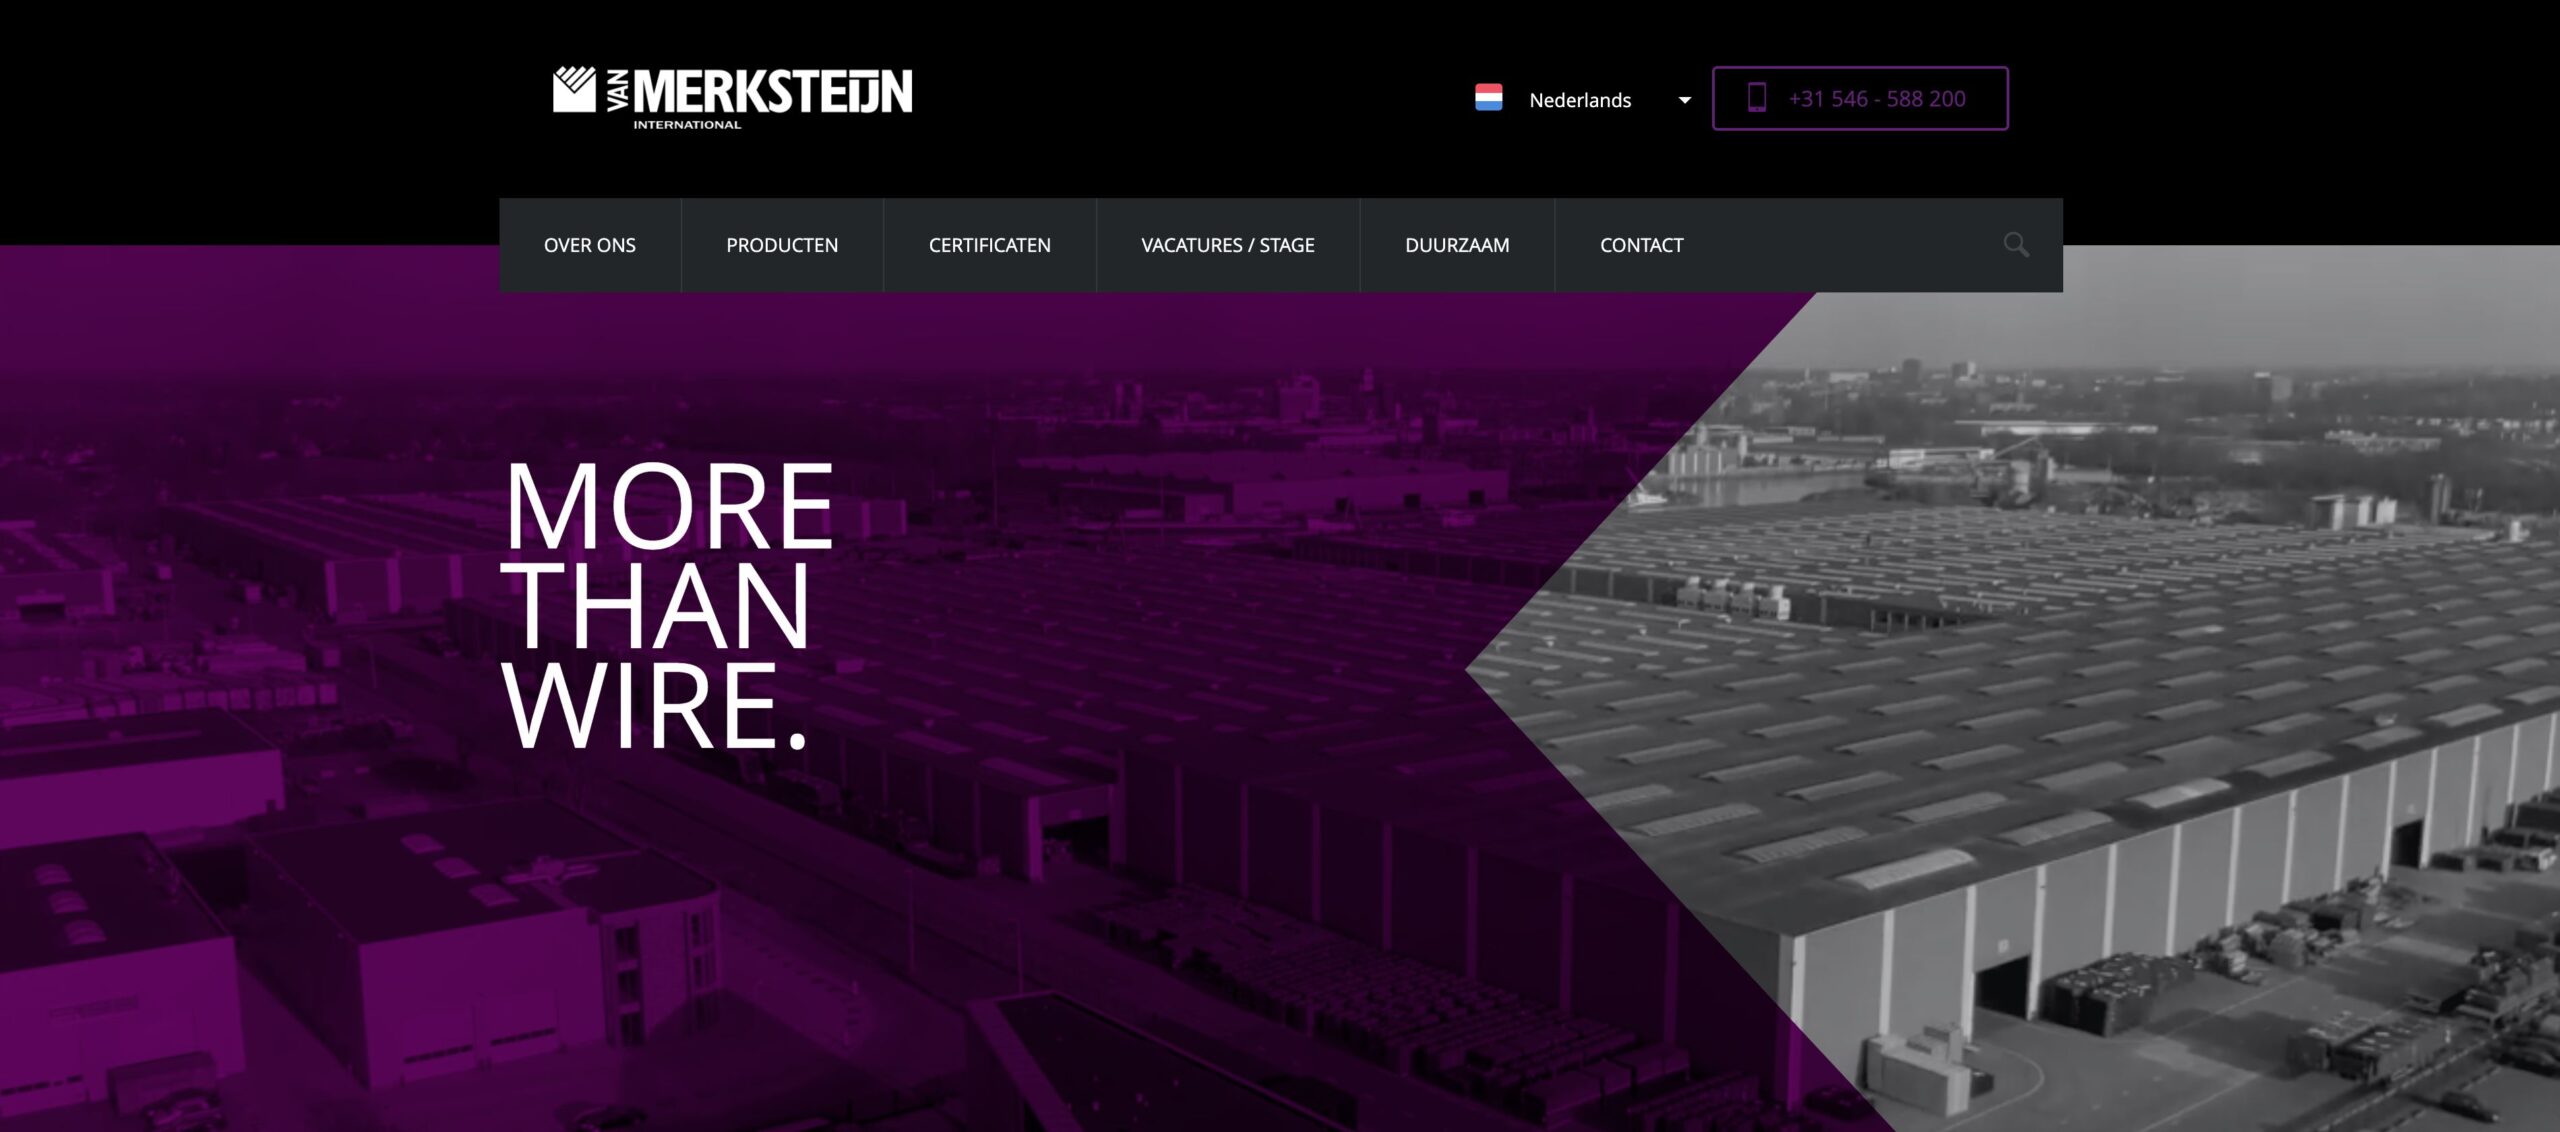 De Van Merksteijn website met fris en nieuw uiterlijk. Ontwikkeld door Snellink Digital Design.